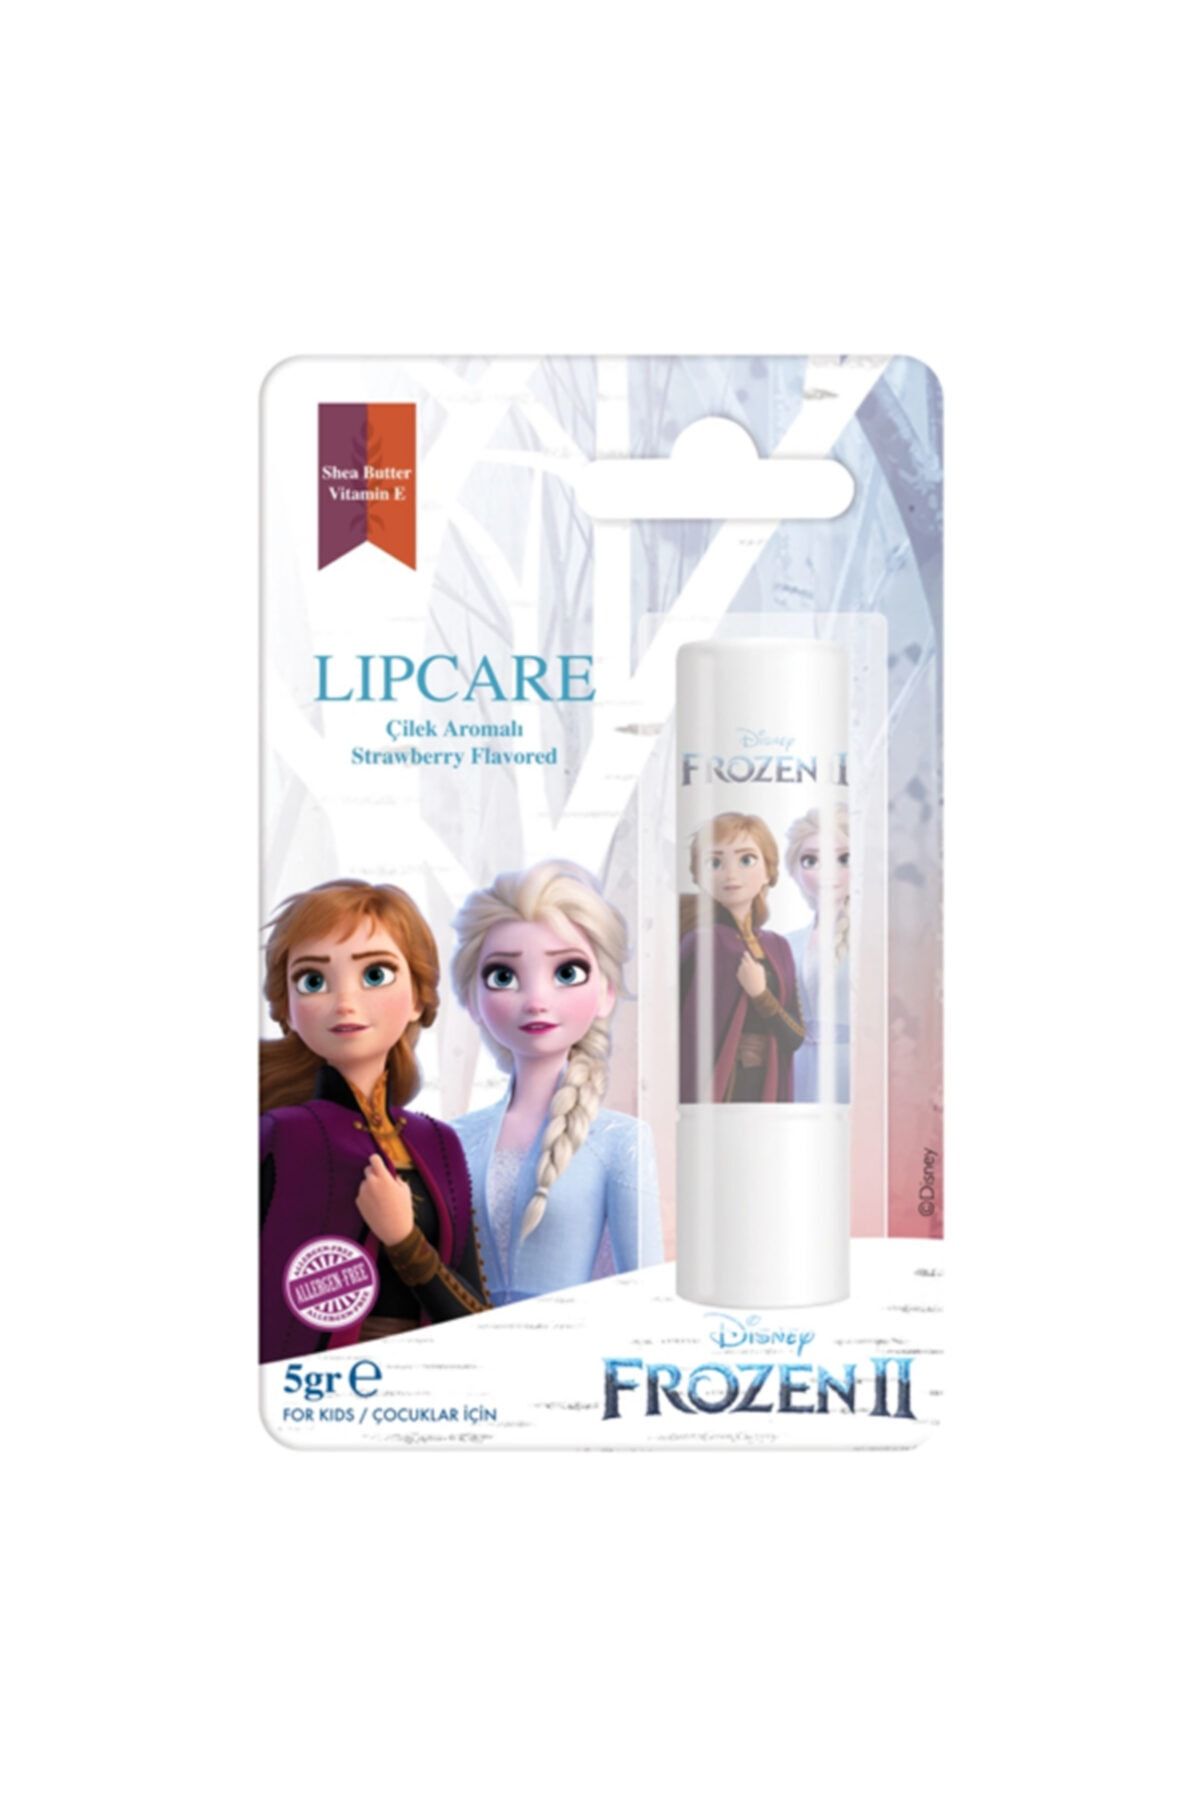 DİSNEY B-good Disney Frozen Iı Dudak Koruyucu Lip Care Spf 20